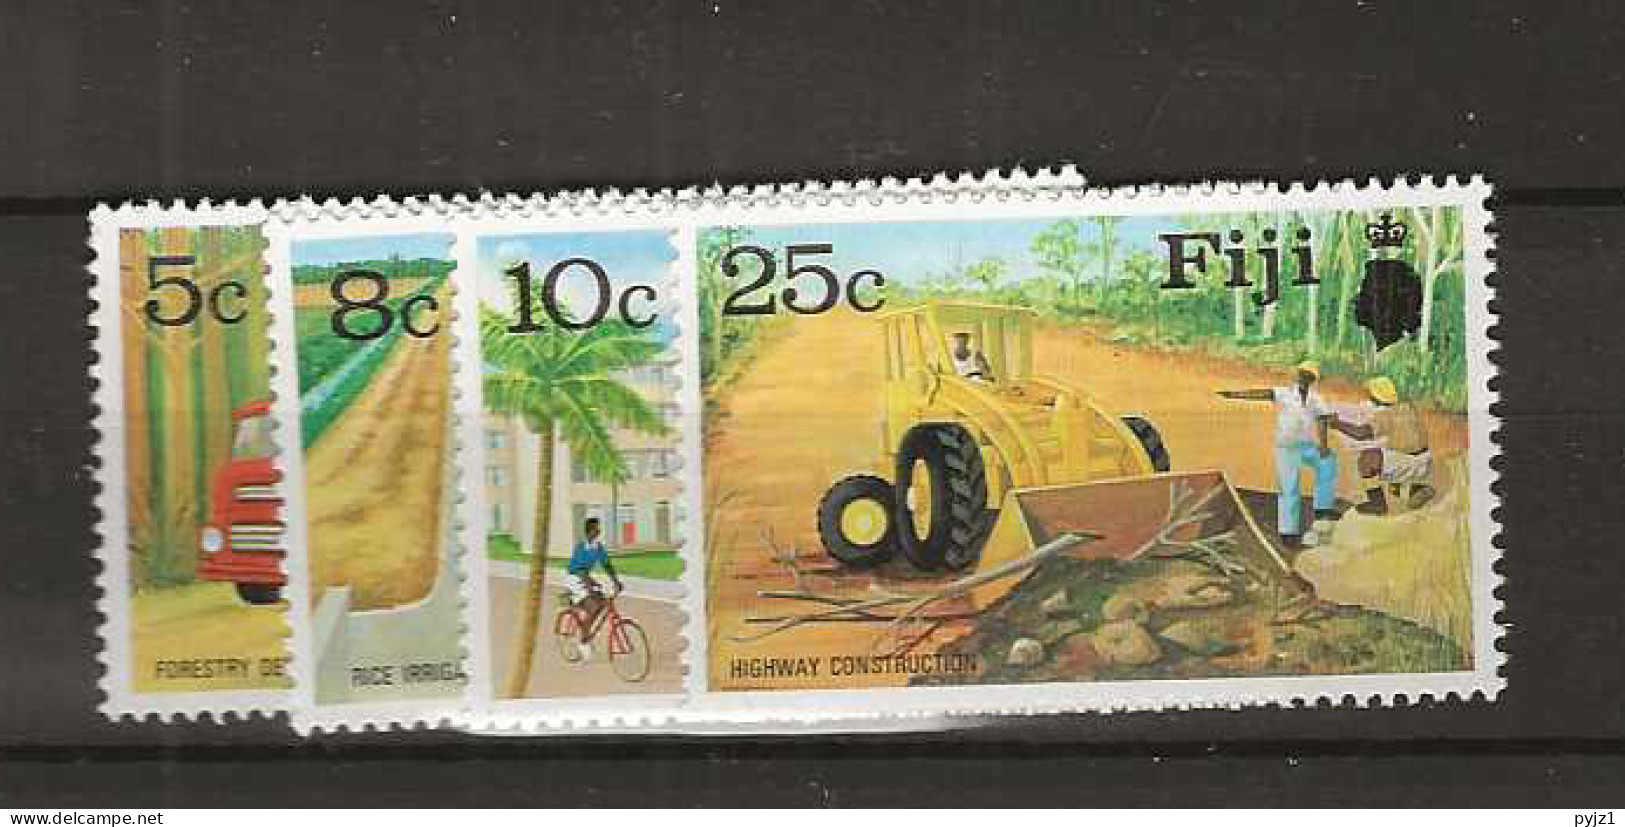 1973 MNH Fidji Mi 306-09 Postfris** - Fiji (1970-...)